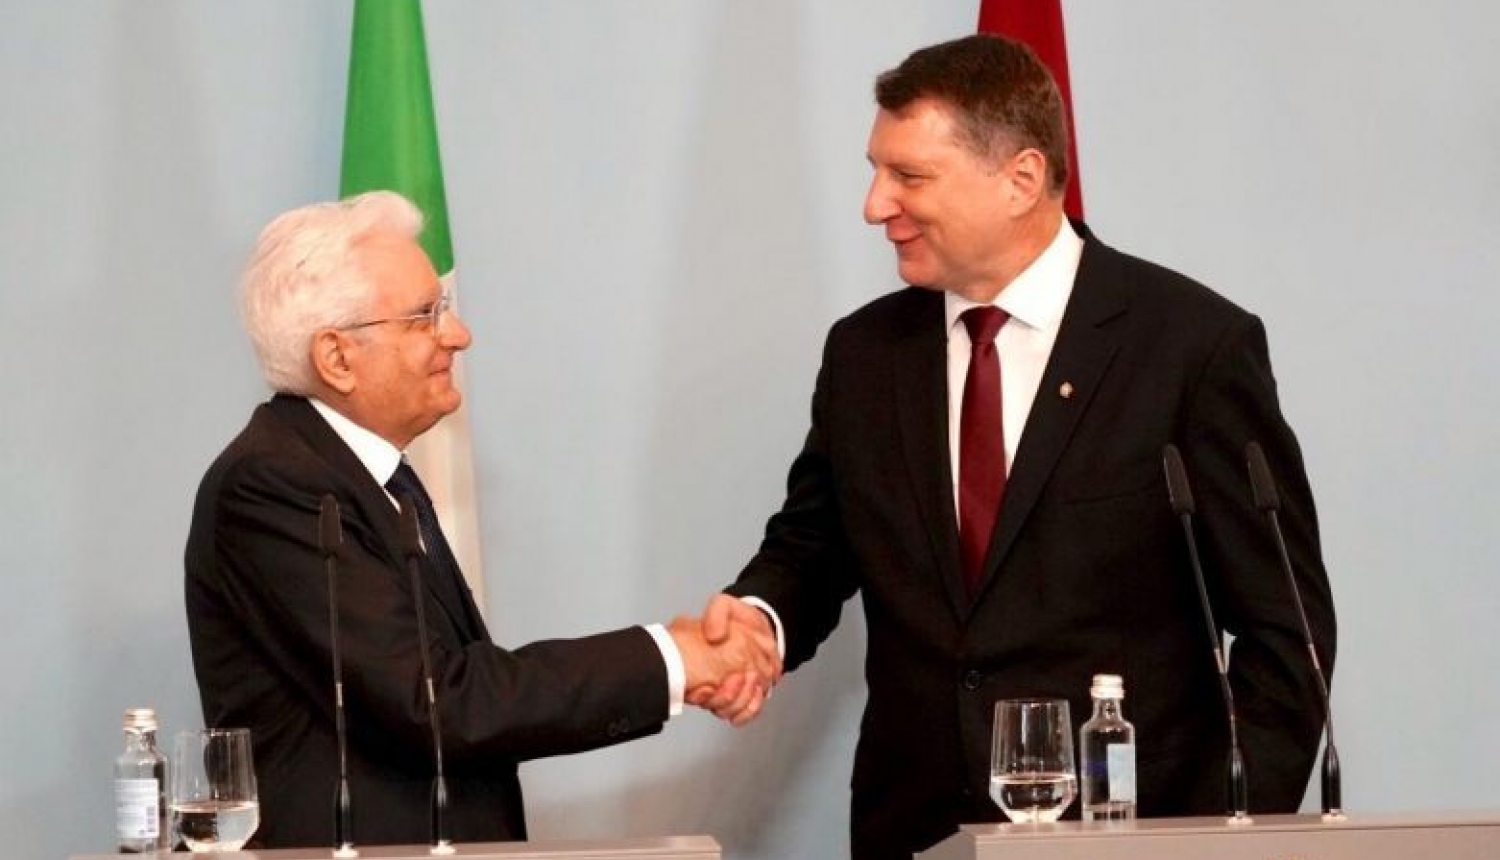 Valsts prezidenta Raimonda Vējoņa paziņojums presei pēc tikšanās ar Itālijas prezidentu Serdžo Matarellu